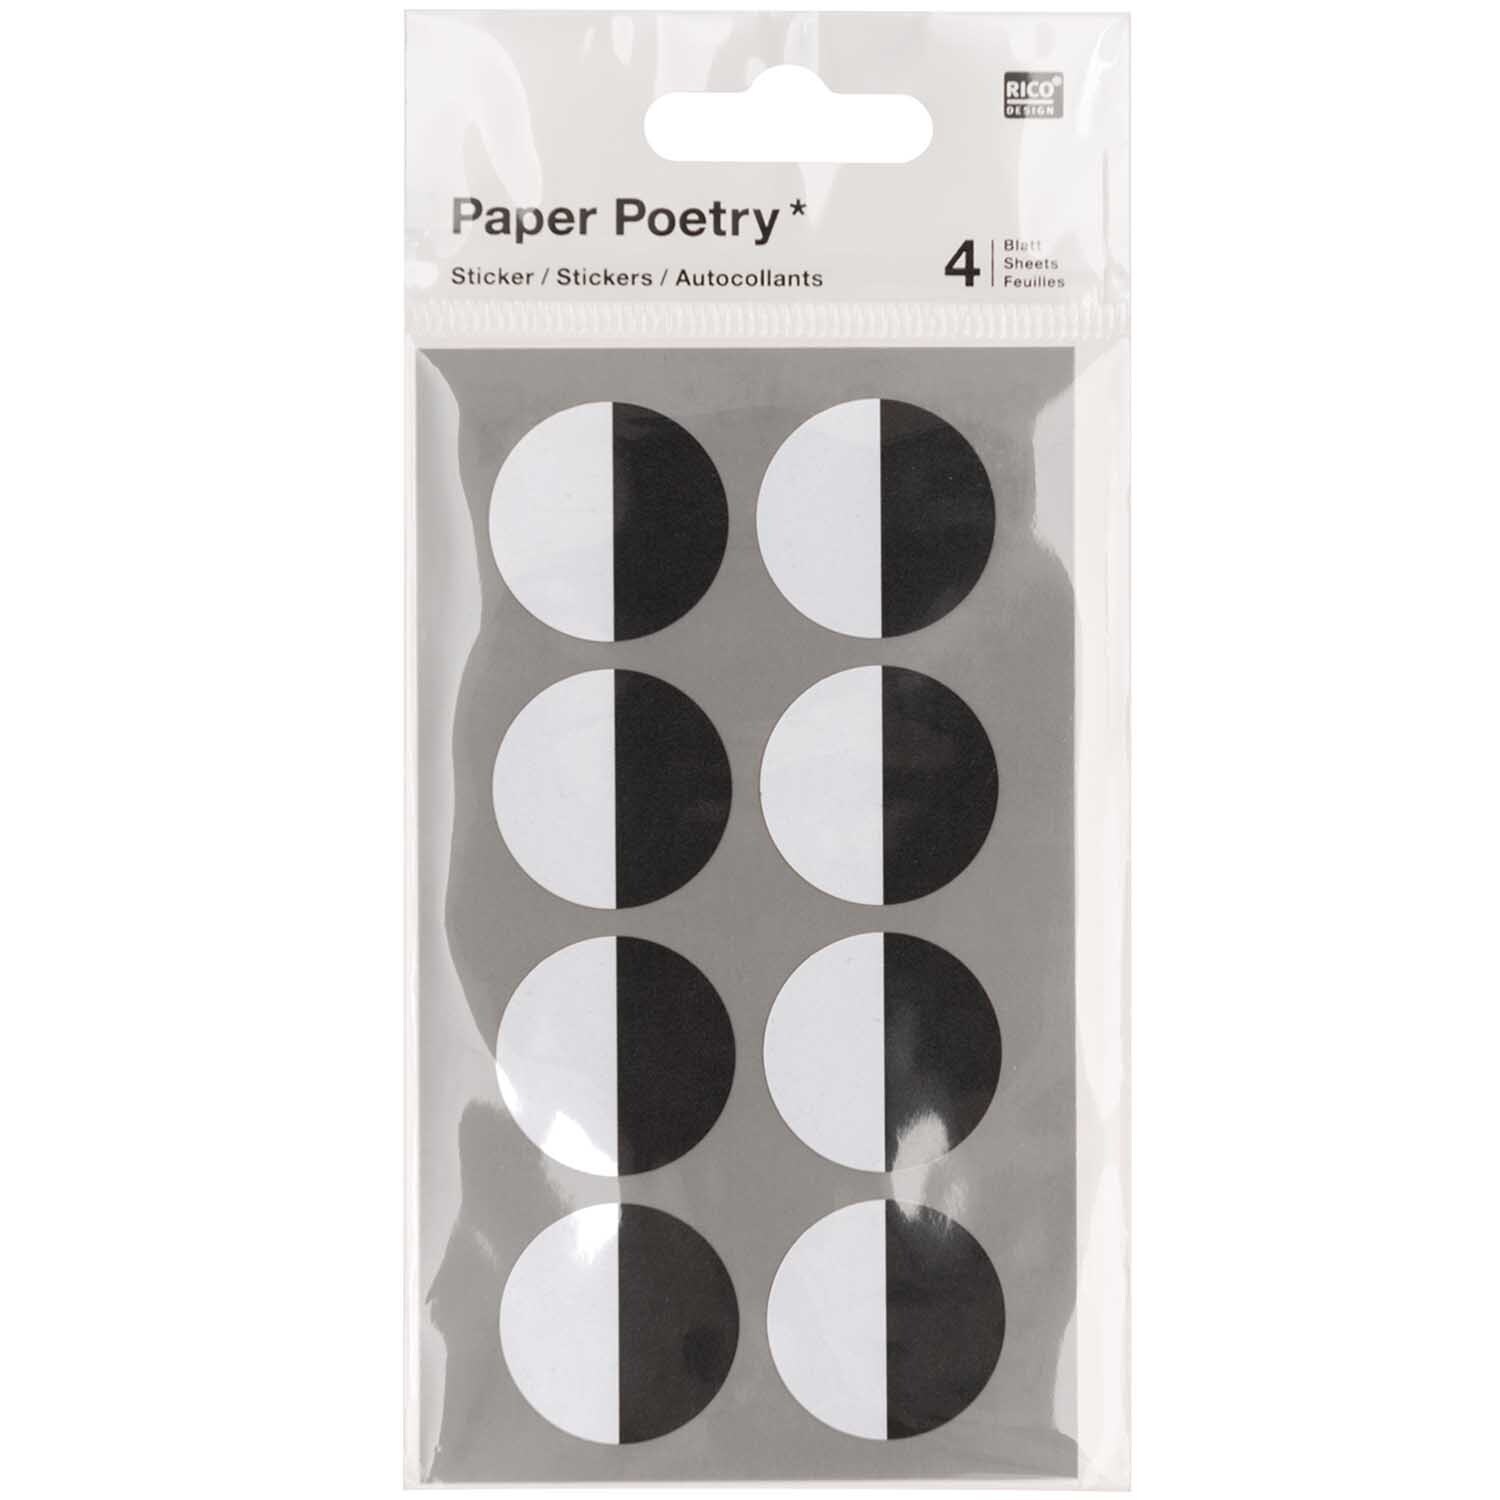 Paper Poetry Sticker Augen rechts 4 Blatt